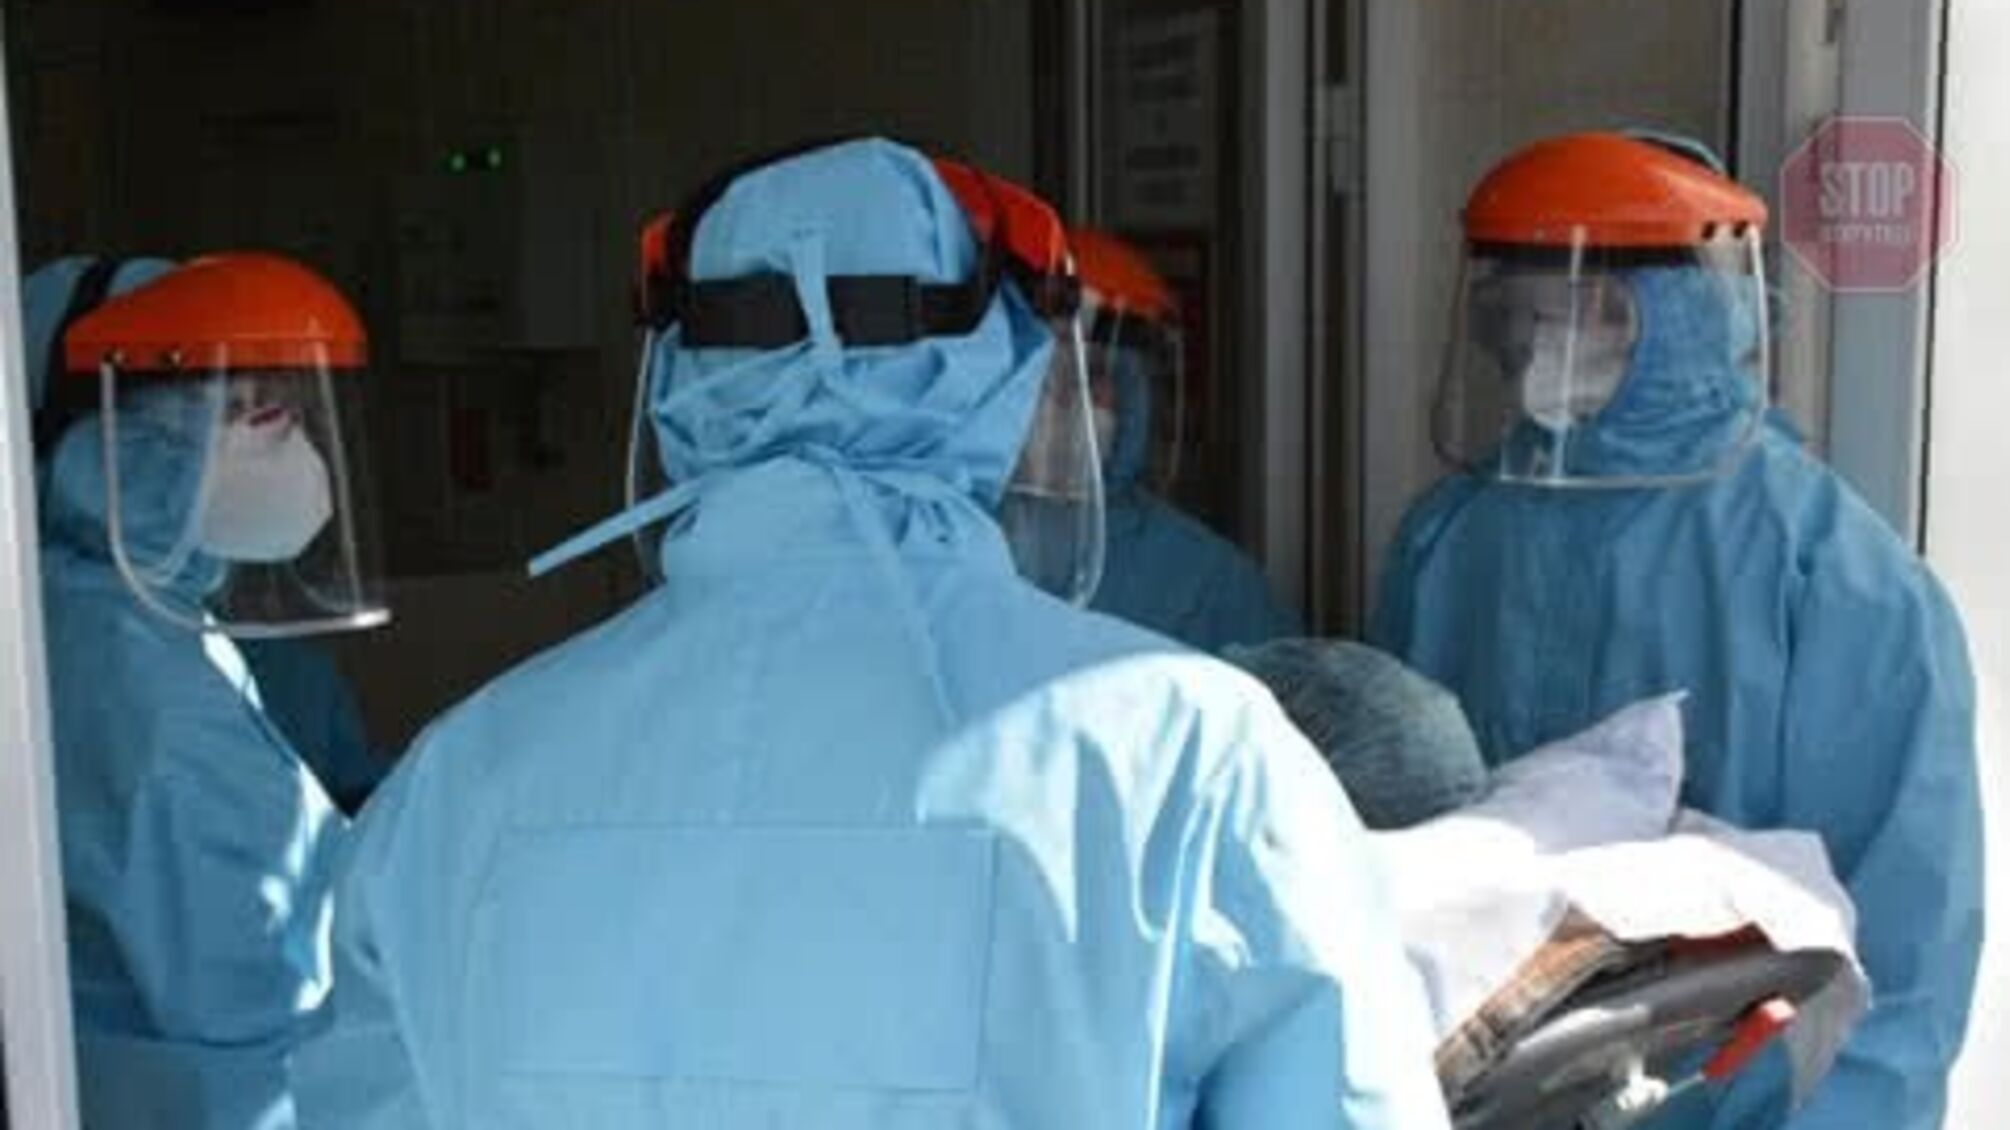 33 людини захворіли коронавірусом у столиці